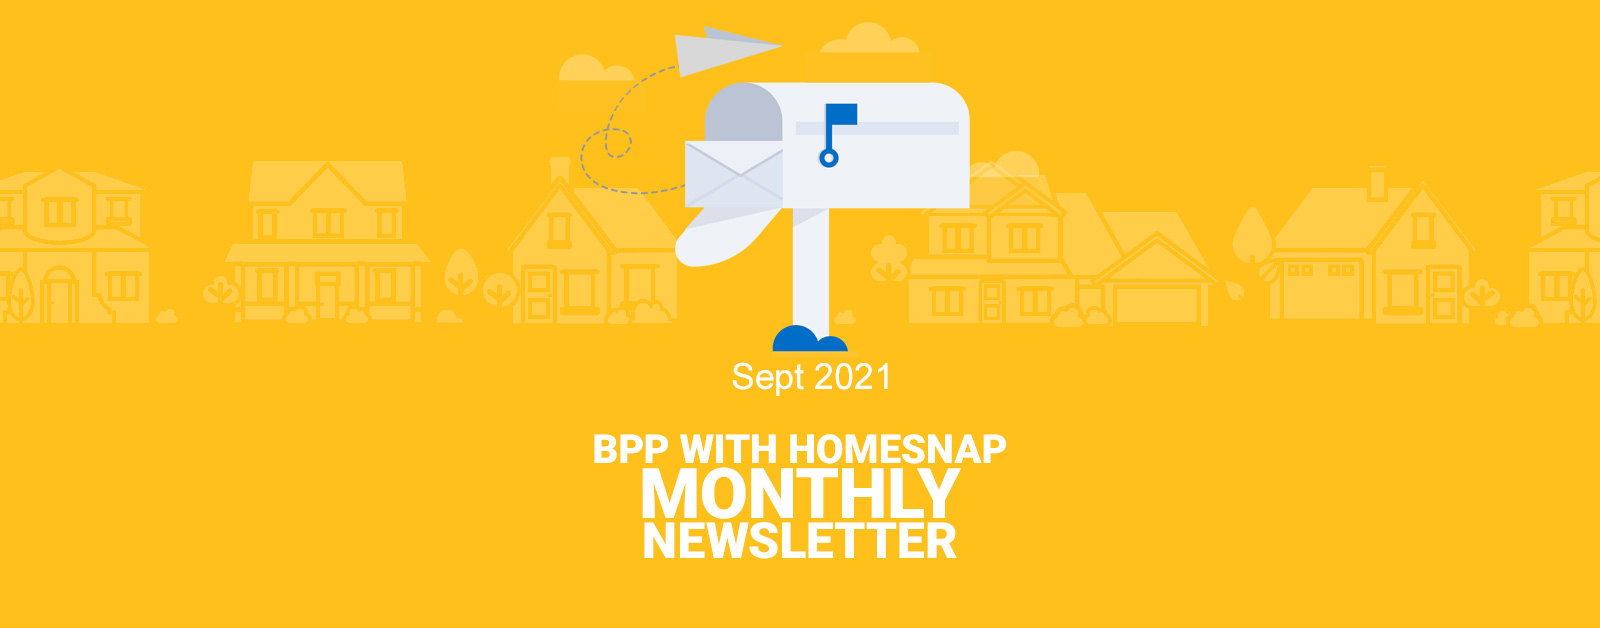 Homesnap with BPP Sept Newsletter